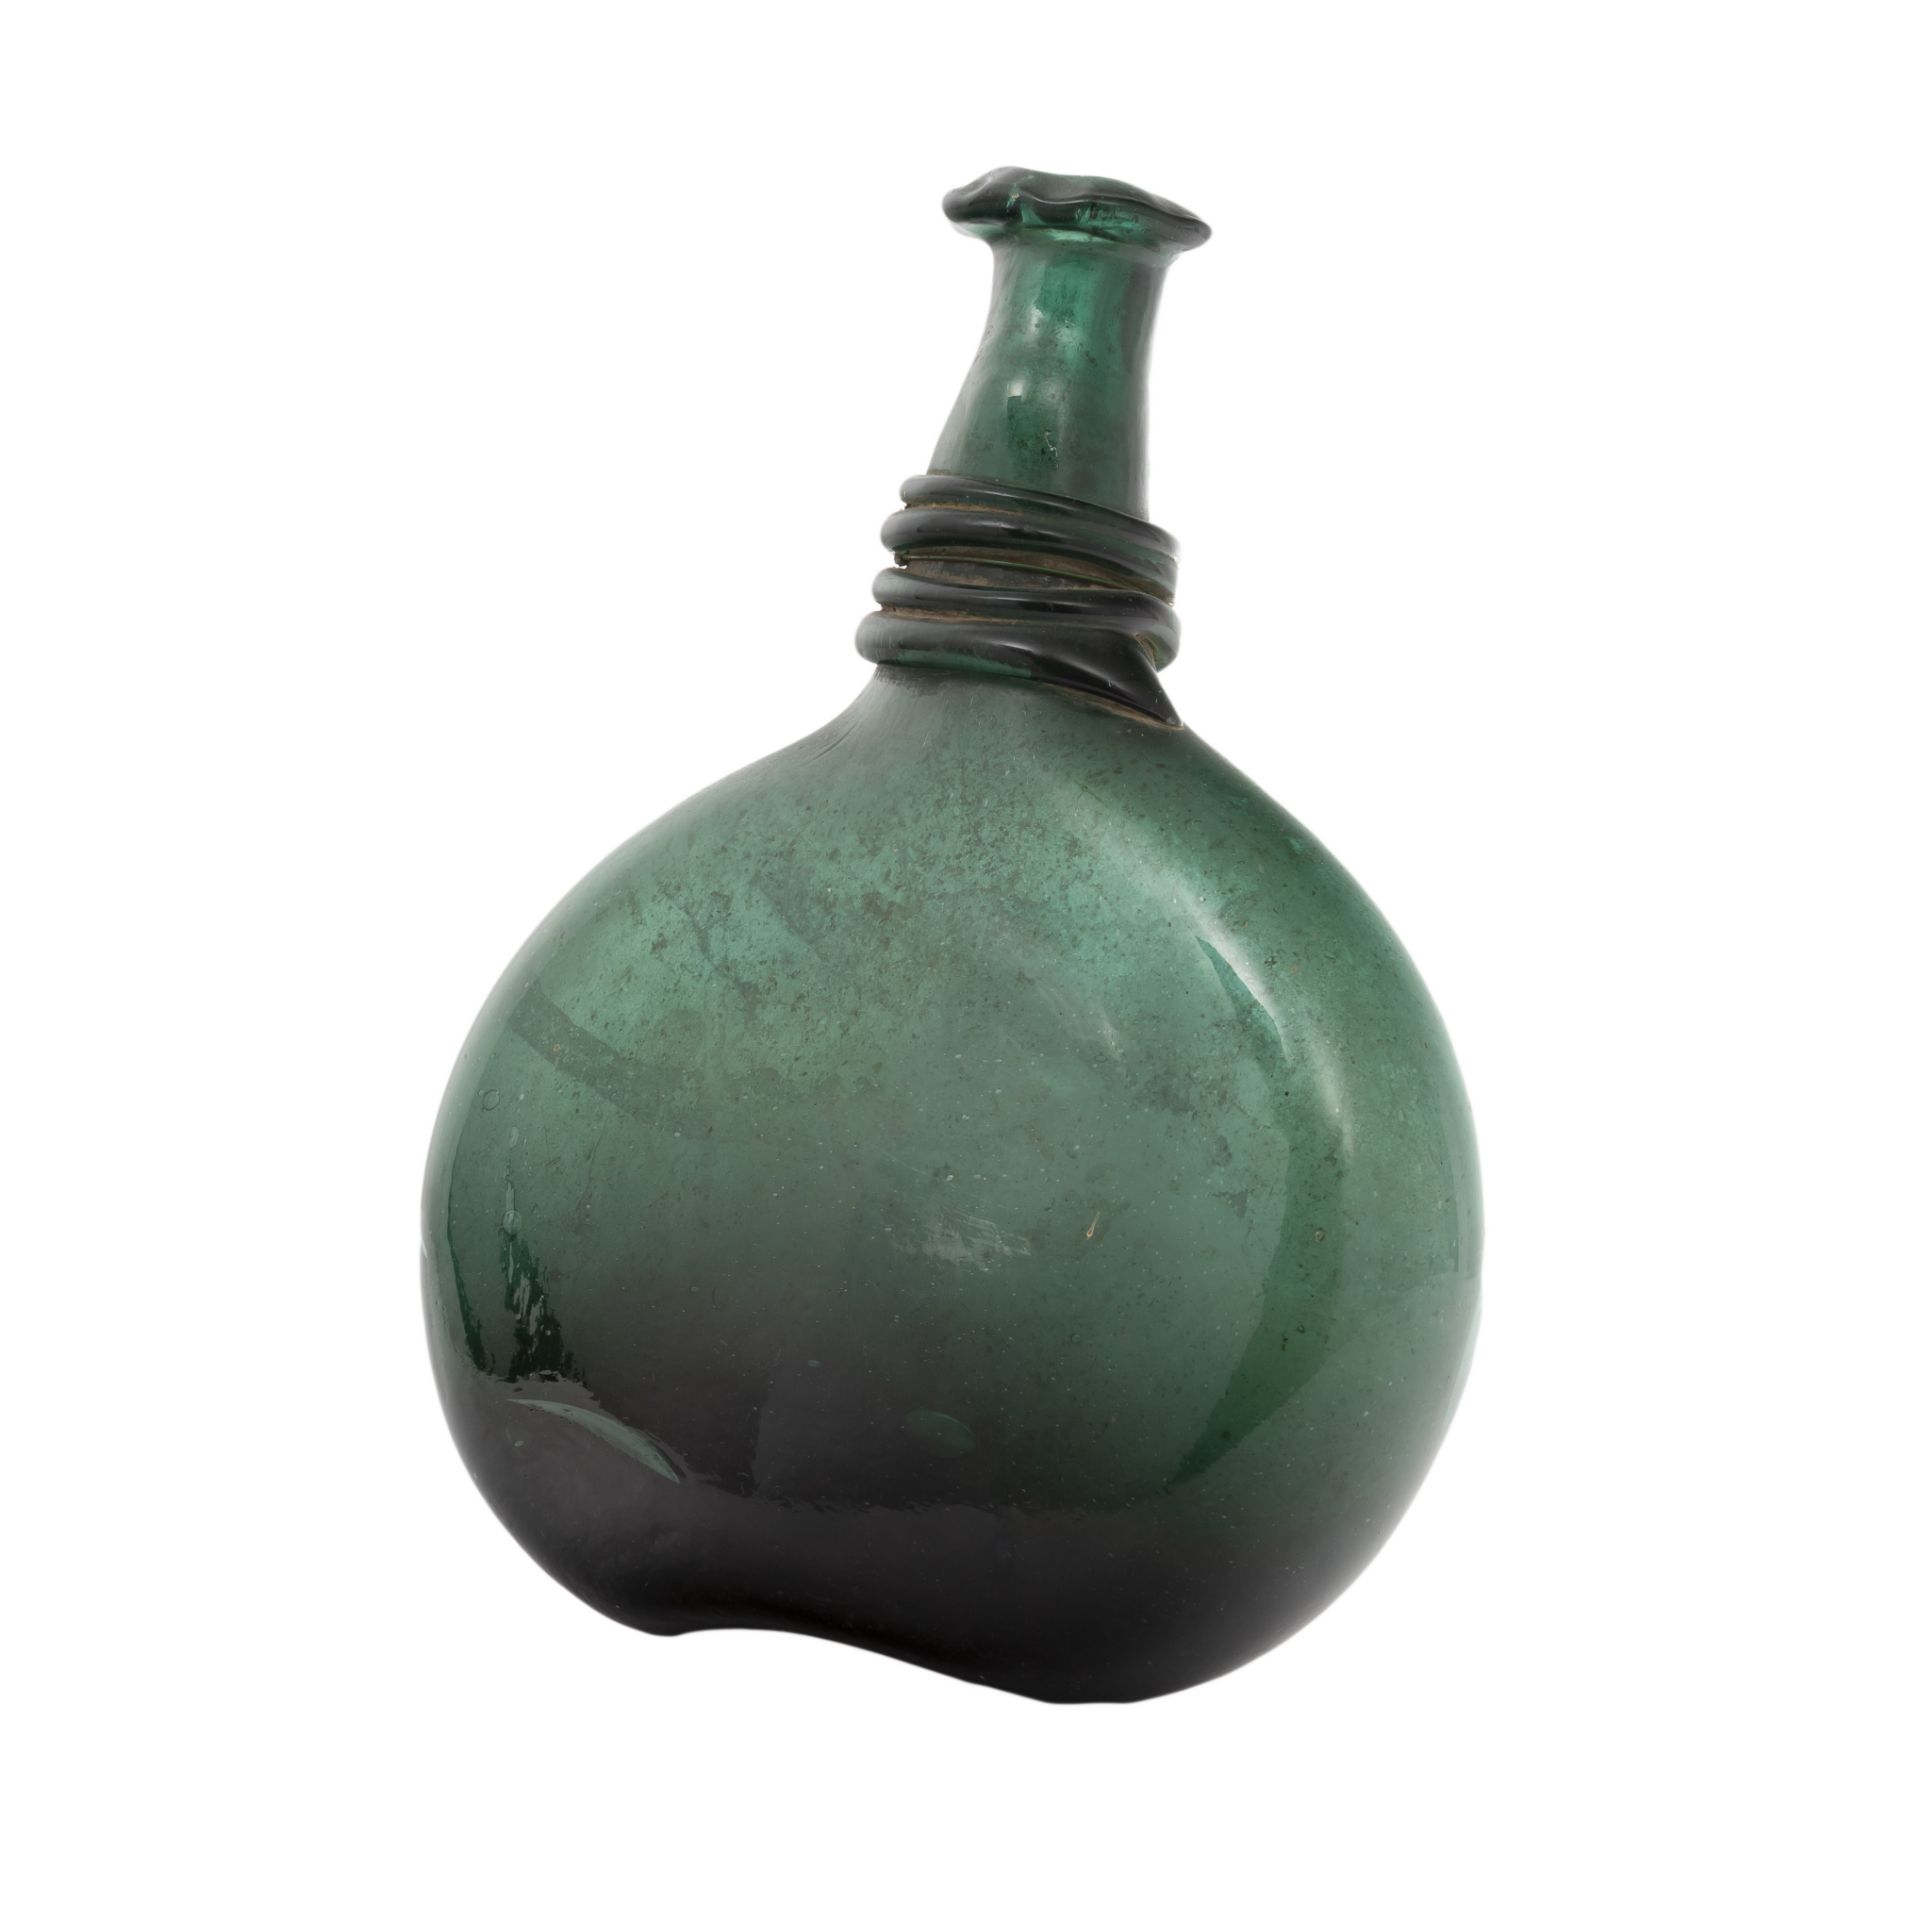 Sehr gut erhaltene Römische Flasche